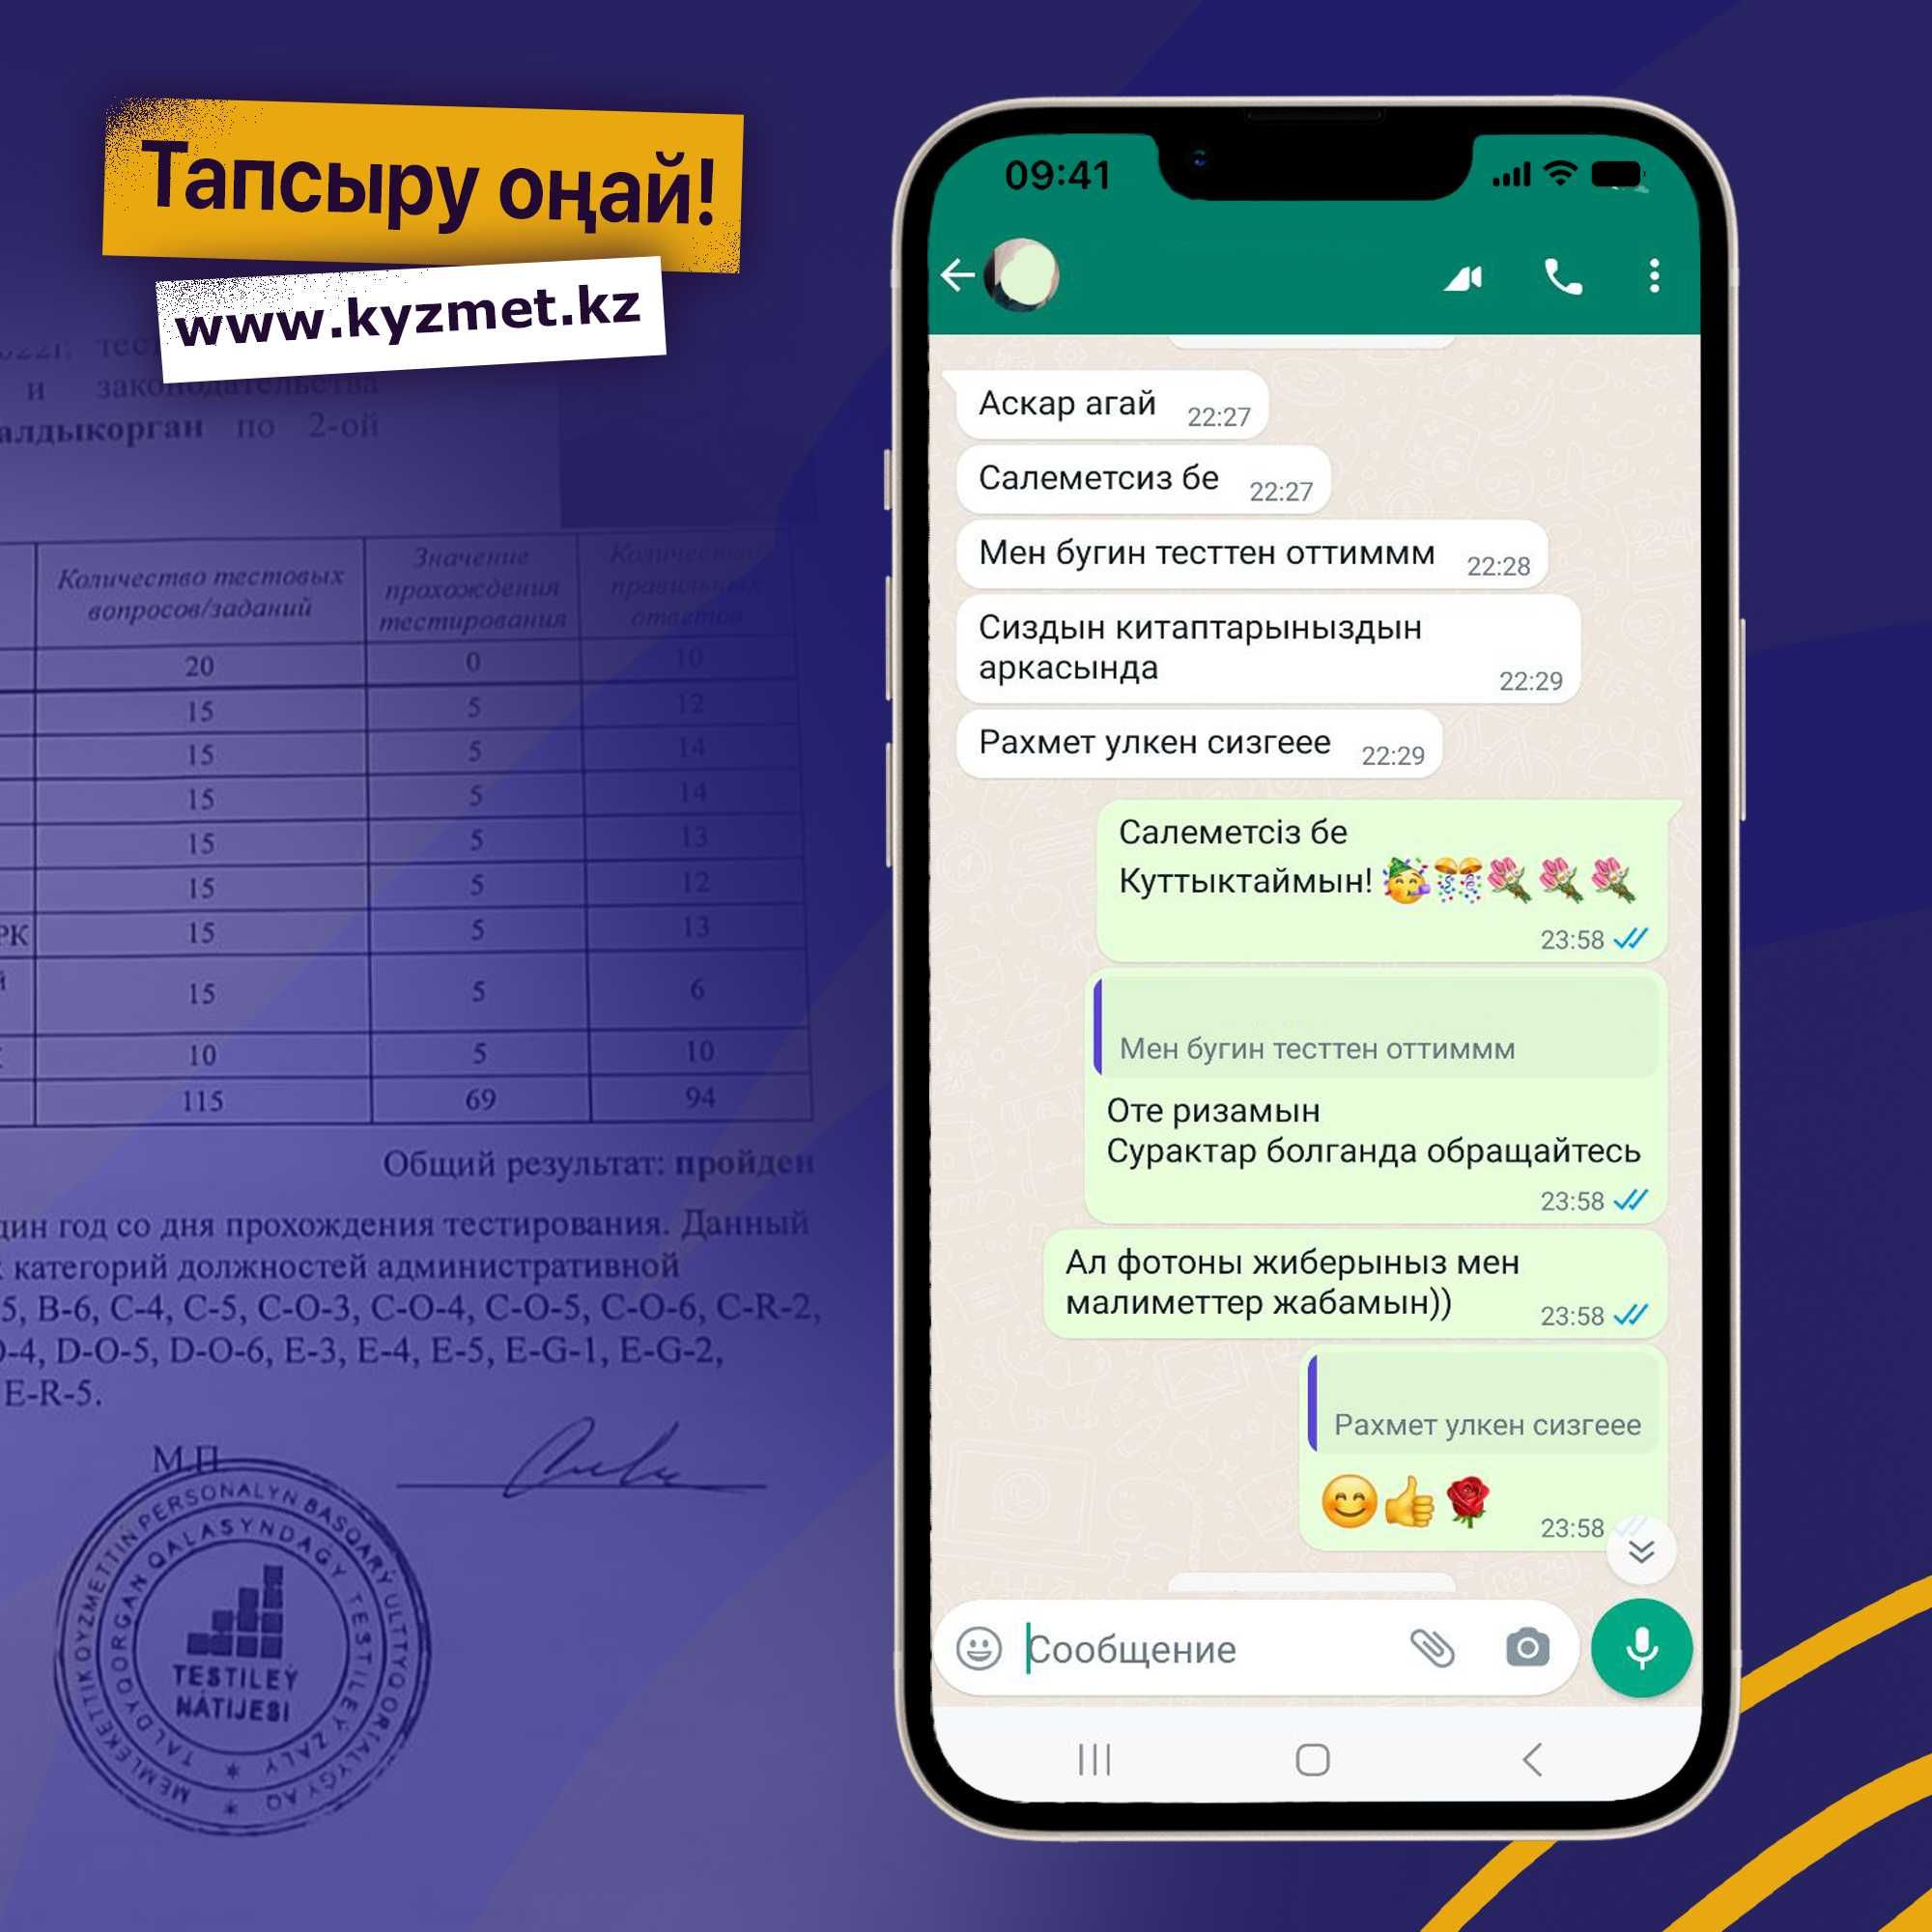 Гостест и ОЛК. Тесты на госслужбу по всем программам. №1 по Казахстану